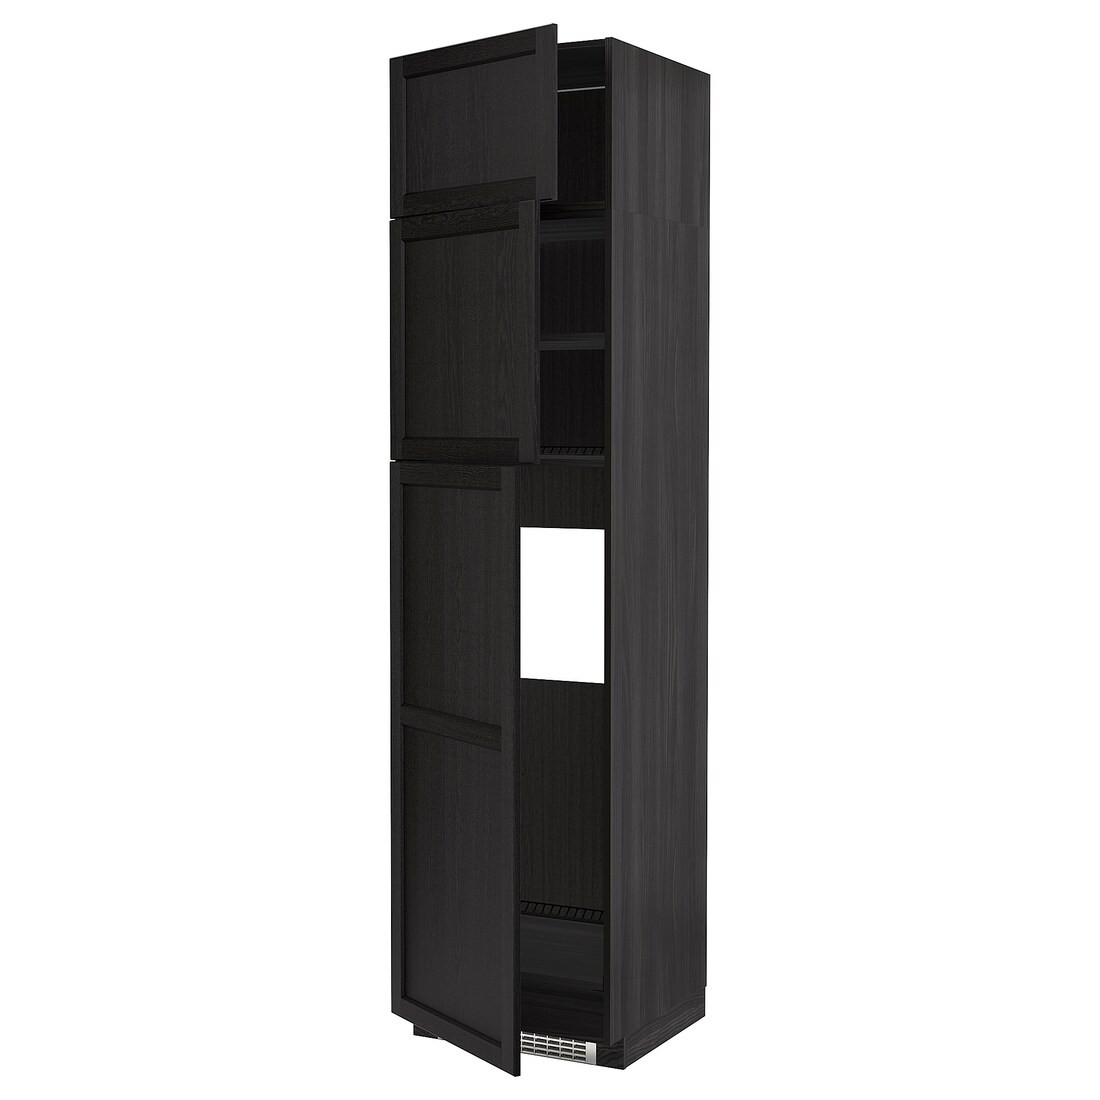 METOD МЕТОД Висока шафа для холодильника з 3 дверима, чорний / Lerhyttan чорна морилка, 60x60x240 см